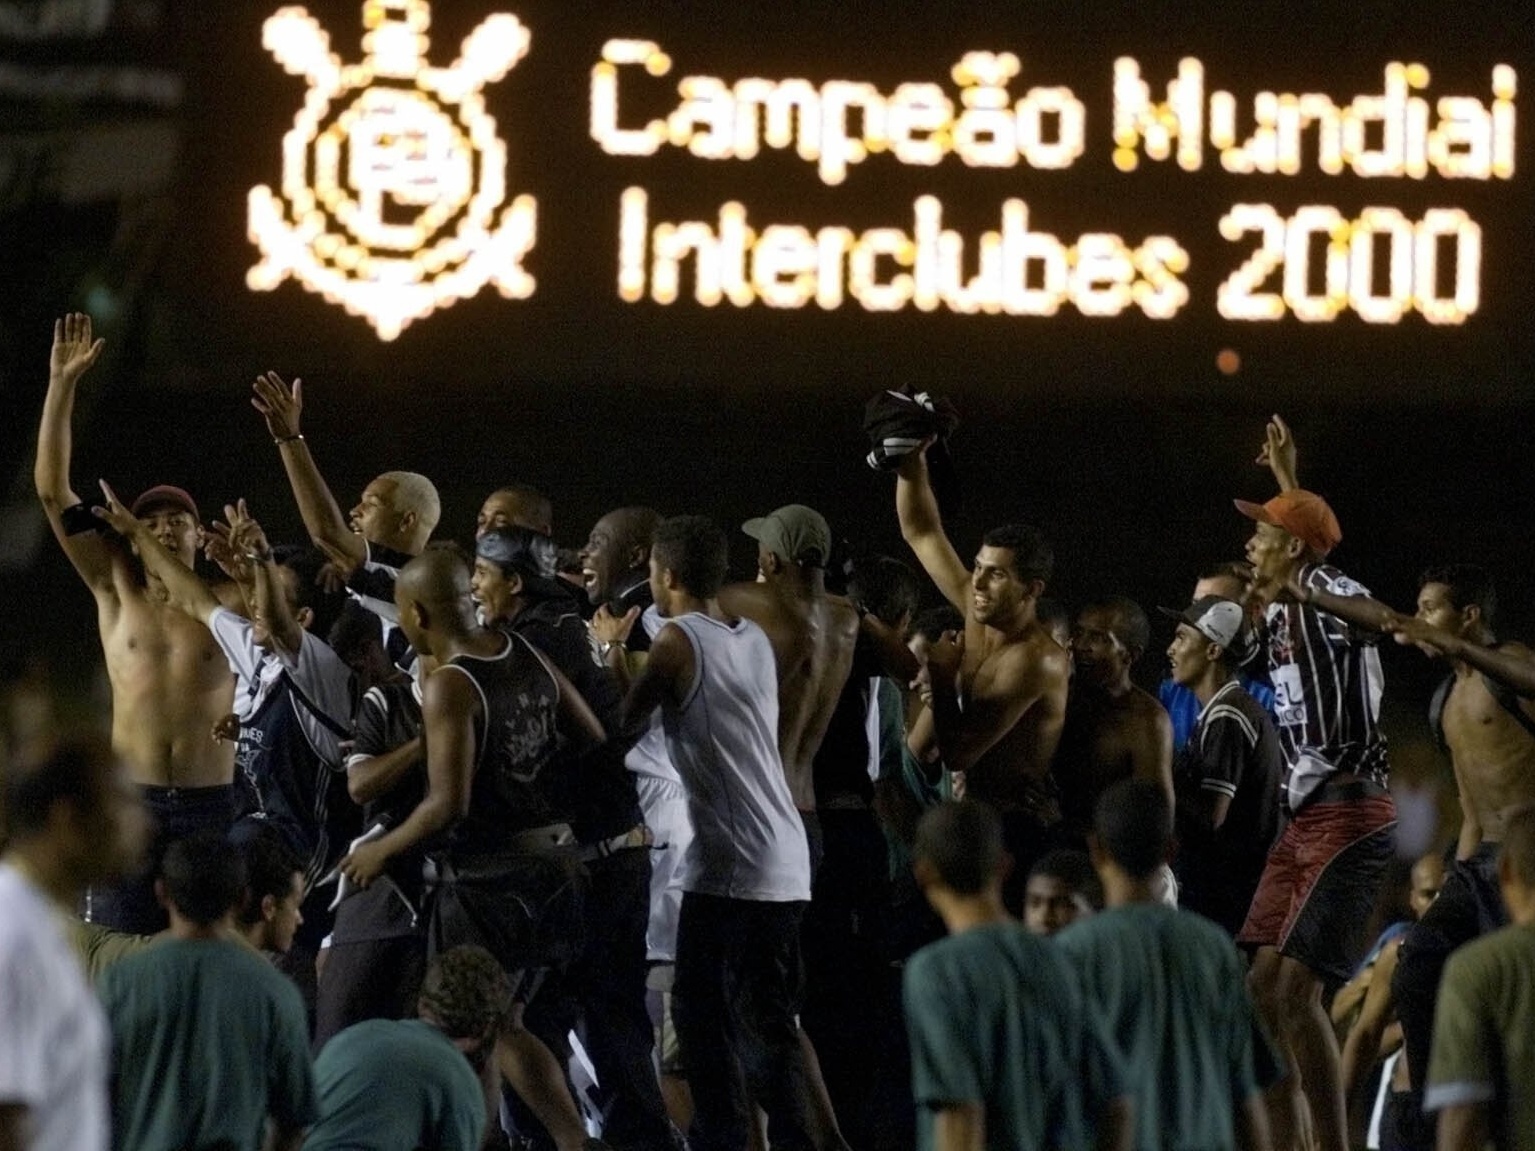 Mundial de 2000, iniciado há 20 anos e vencido pelo Corinthians